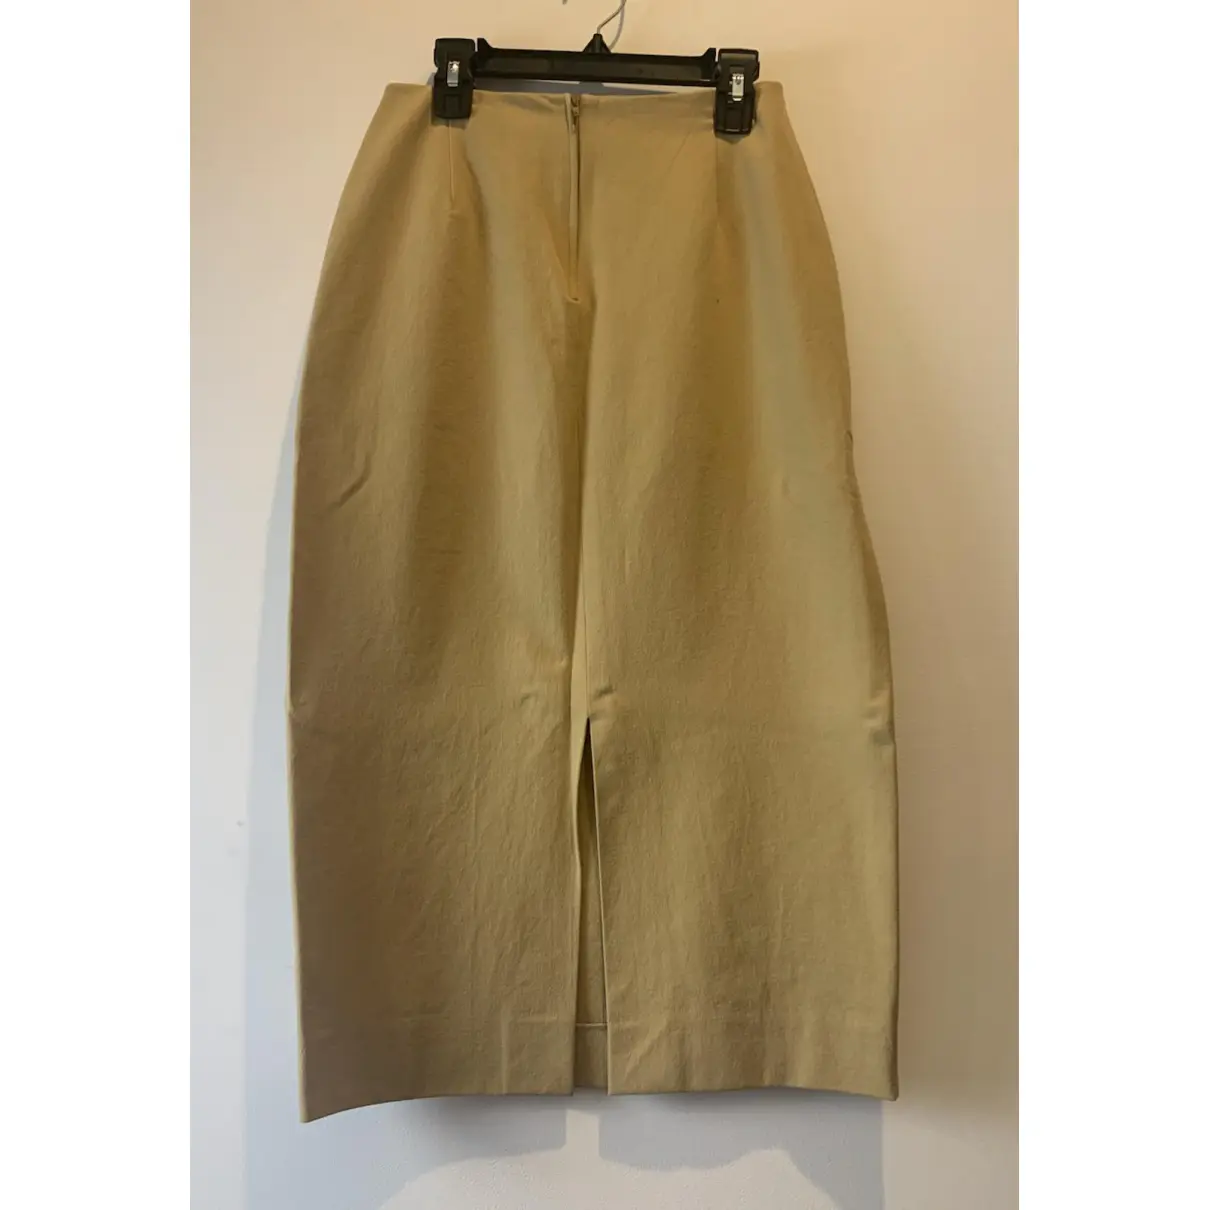 Buy Michael Kors Maxi skirt online